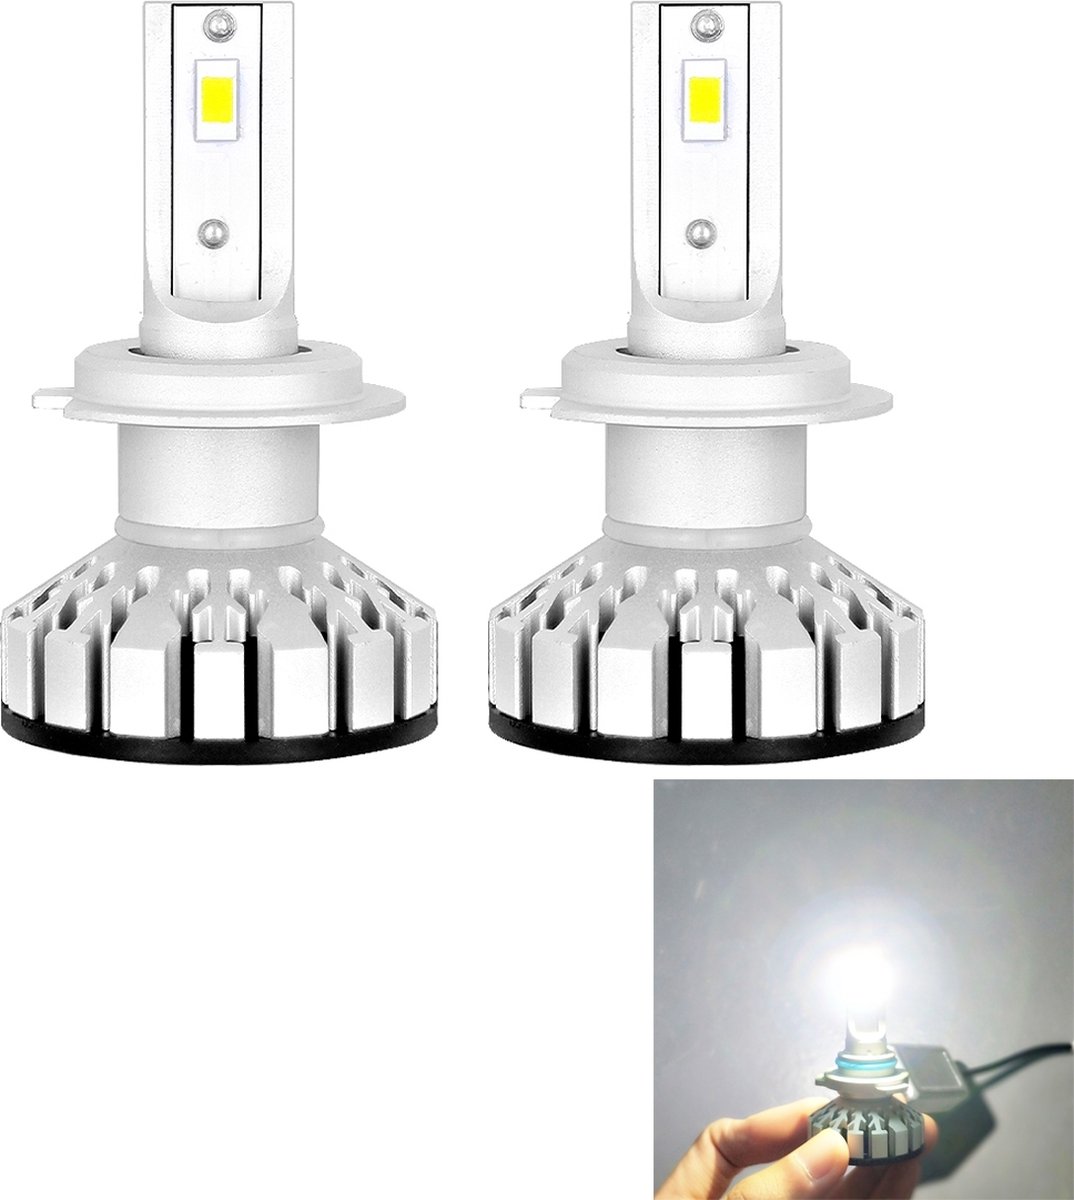 Jeu d'ampoules LED pour voiture avec douille H7, COB LED